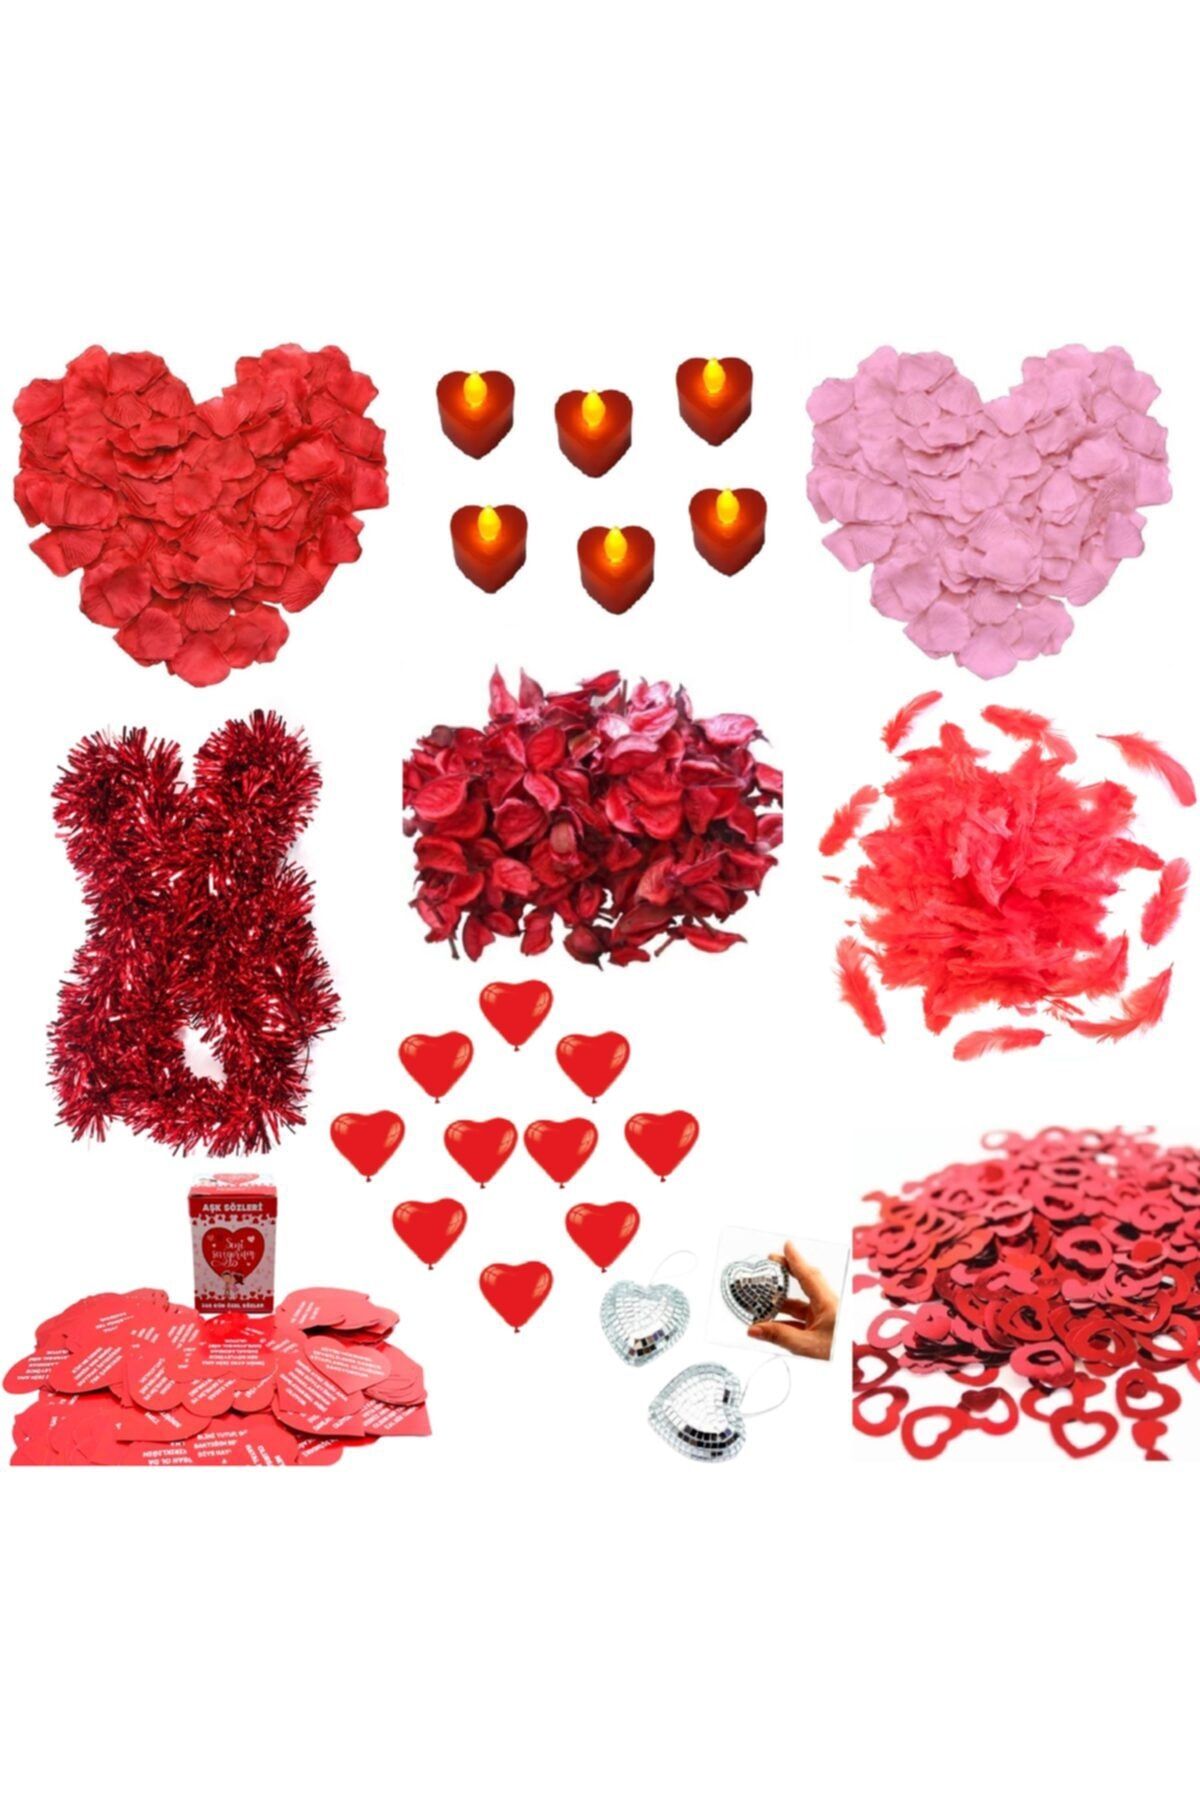 Happyland Sevgililer Günü - Evlilik Teklifi - Romantik Ortam Hazırlama Aşk Paketi Zemin-4 Modeli